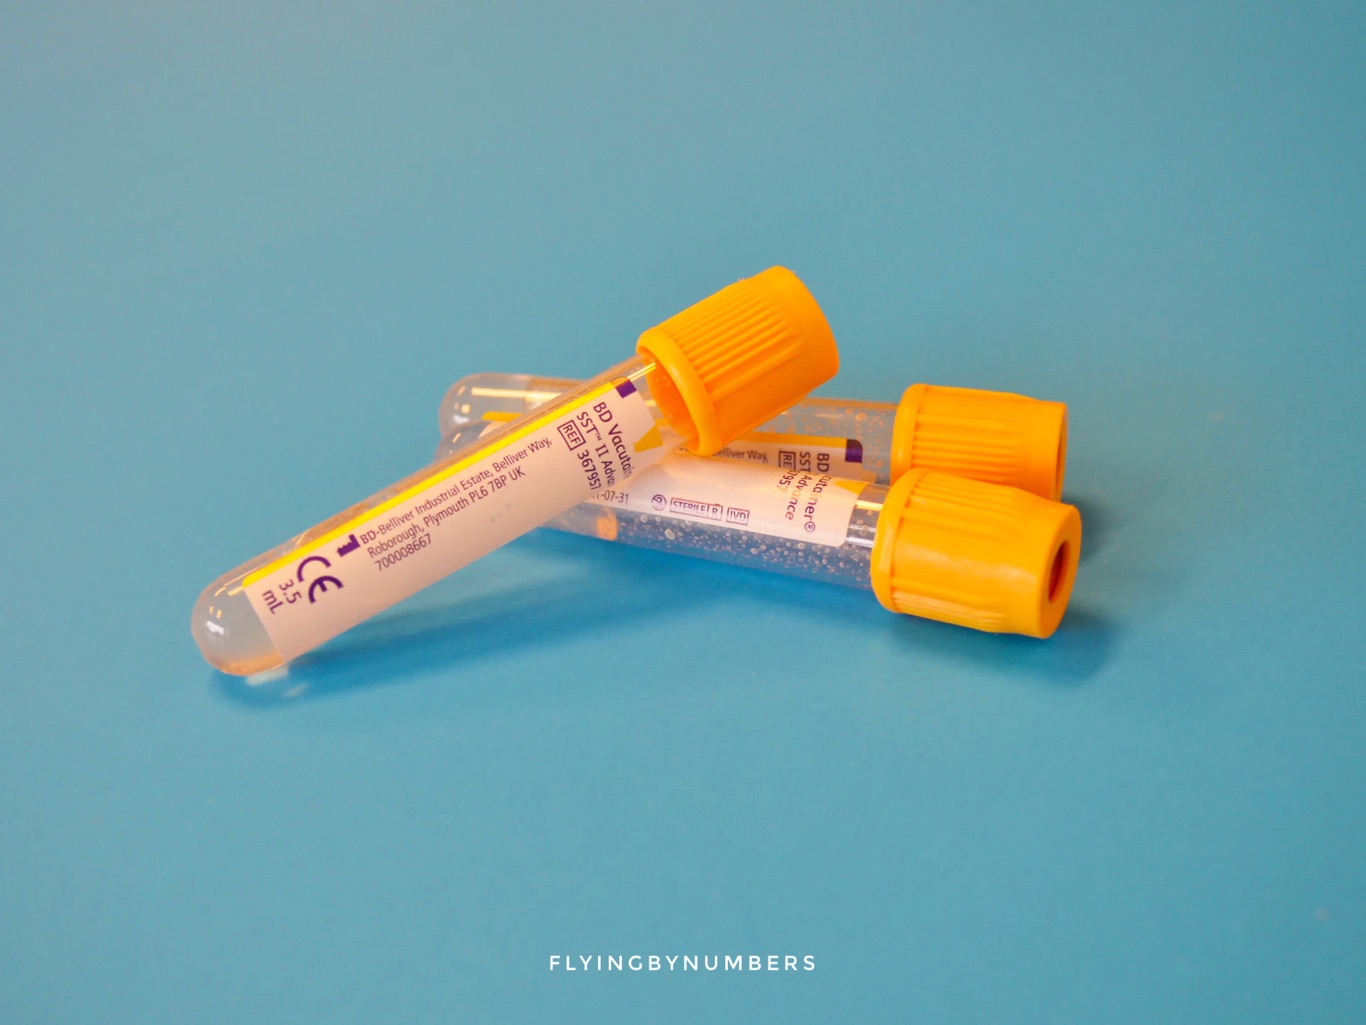 Blood tests for drug sampling